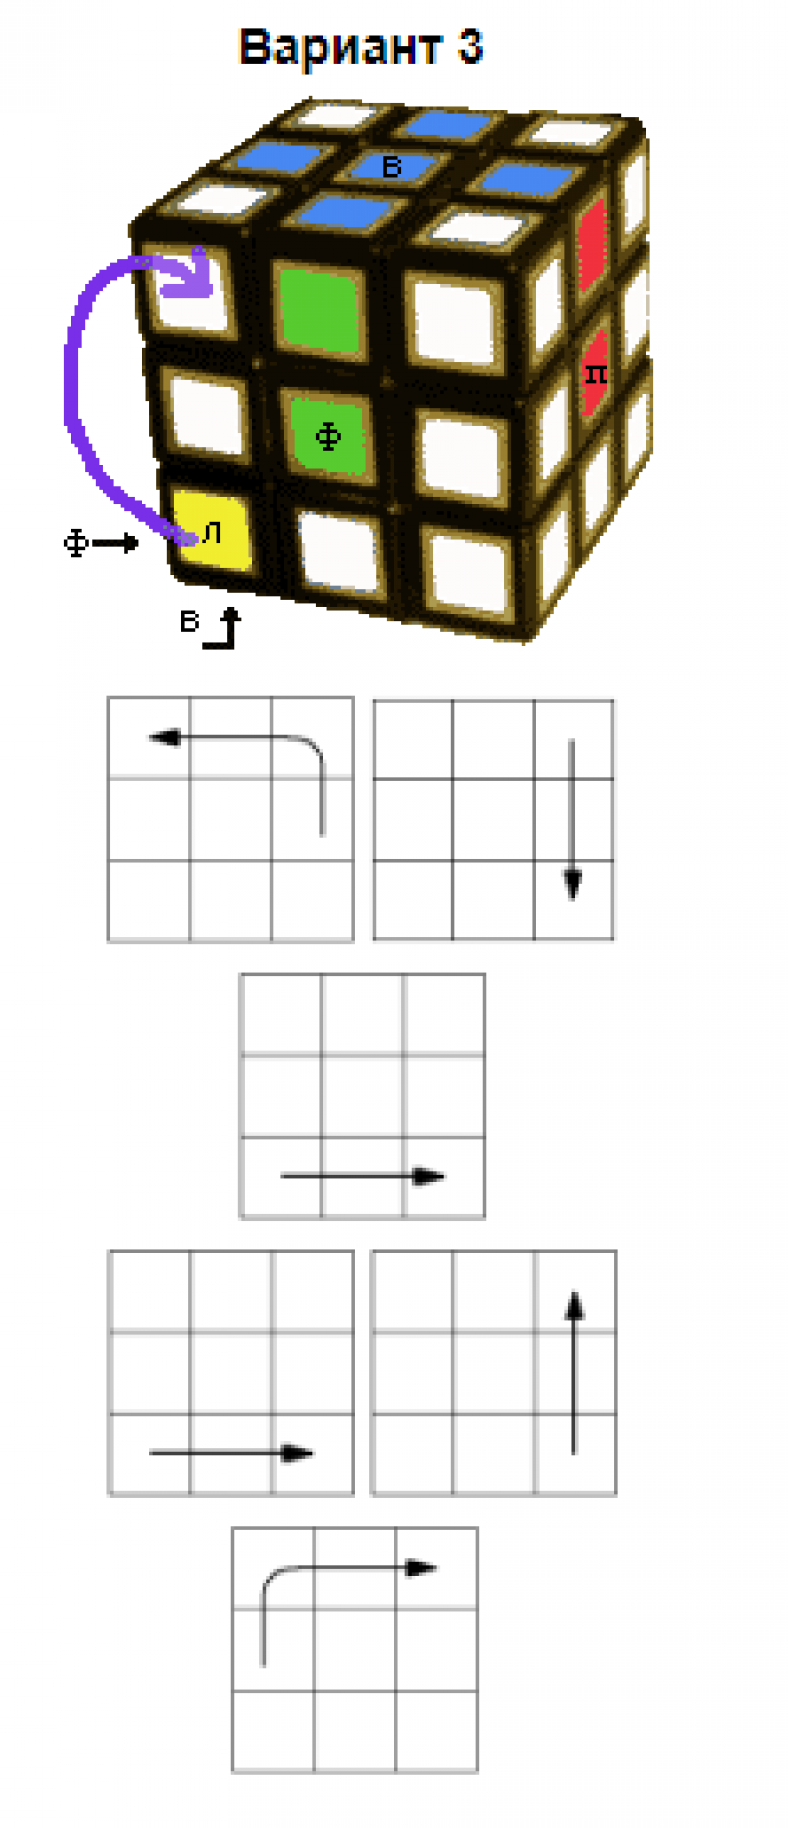 Как быстро собрать кубик рубика для начинающих просто и быстро пошагово с фото